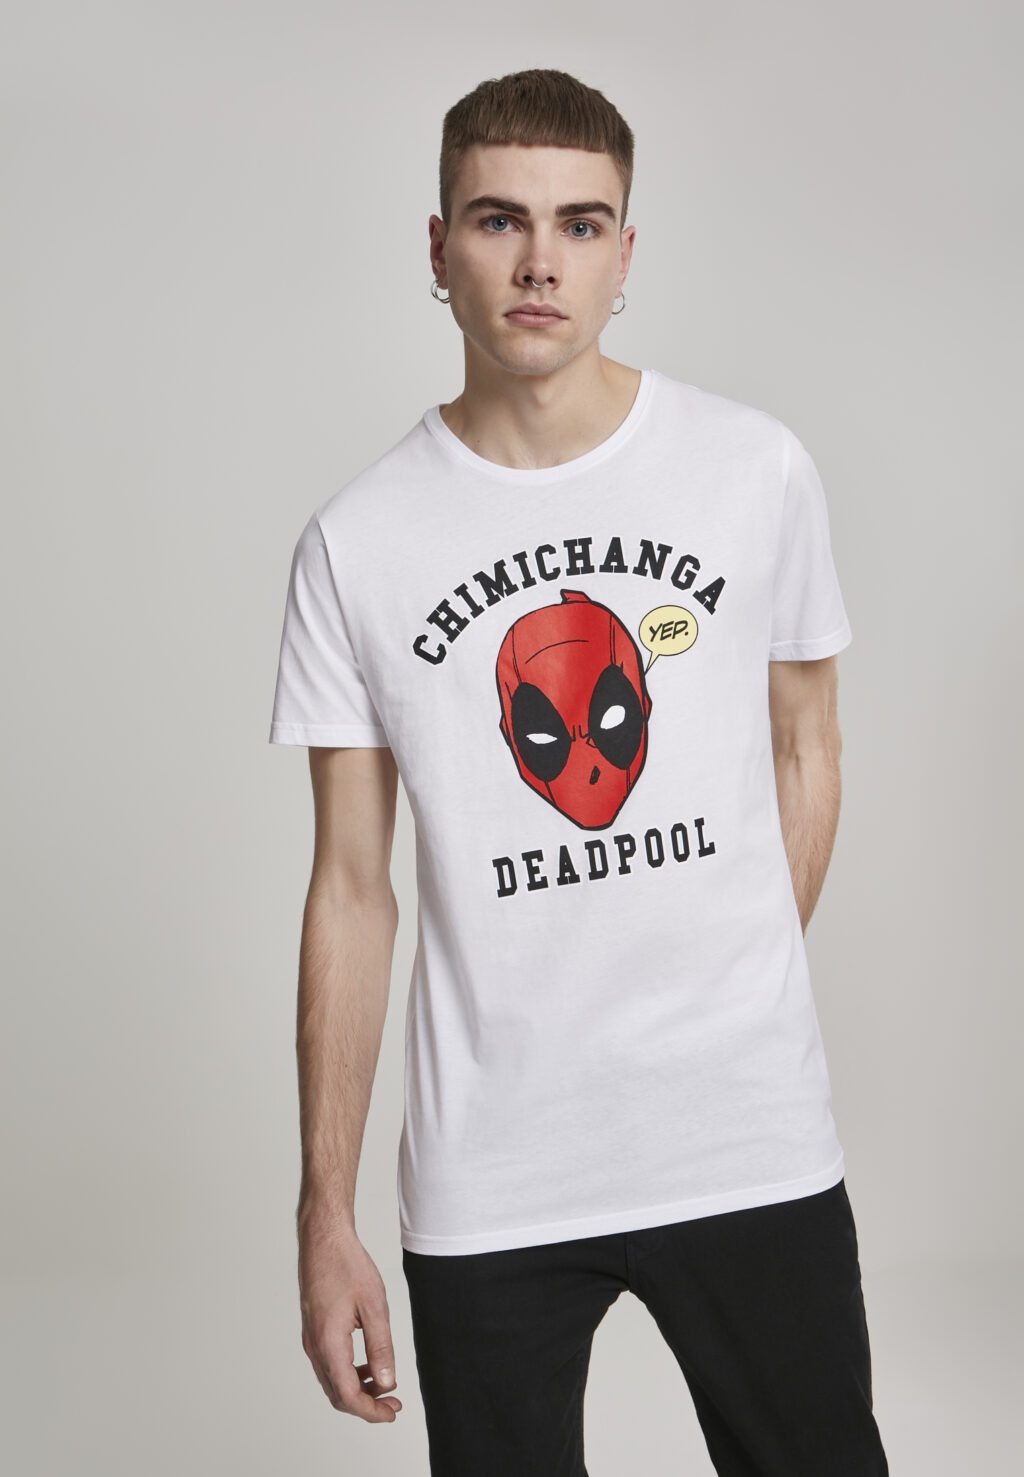 Deadpool Chimichanga Tee white MC314